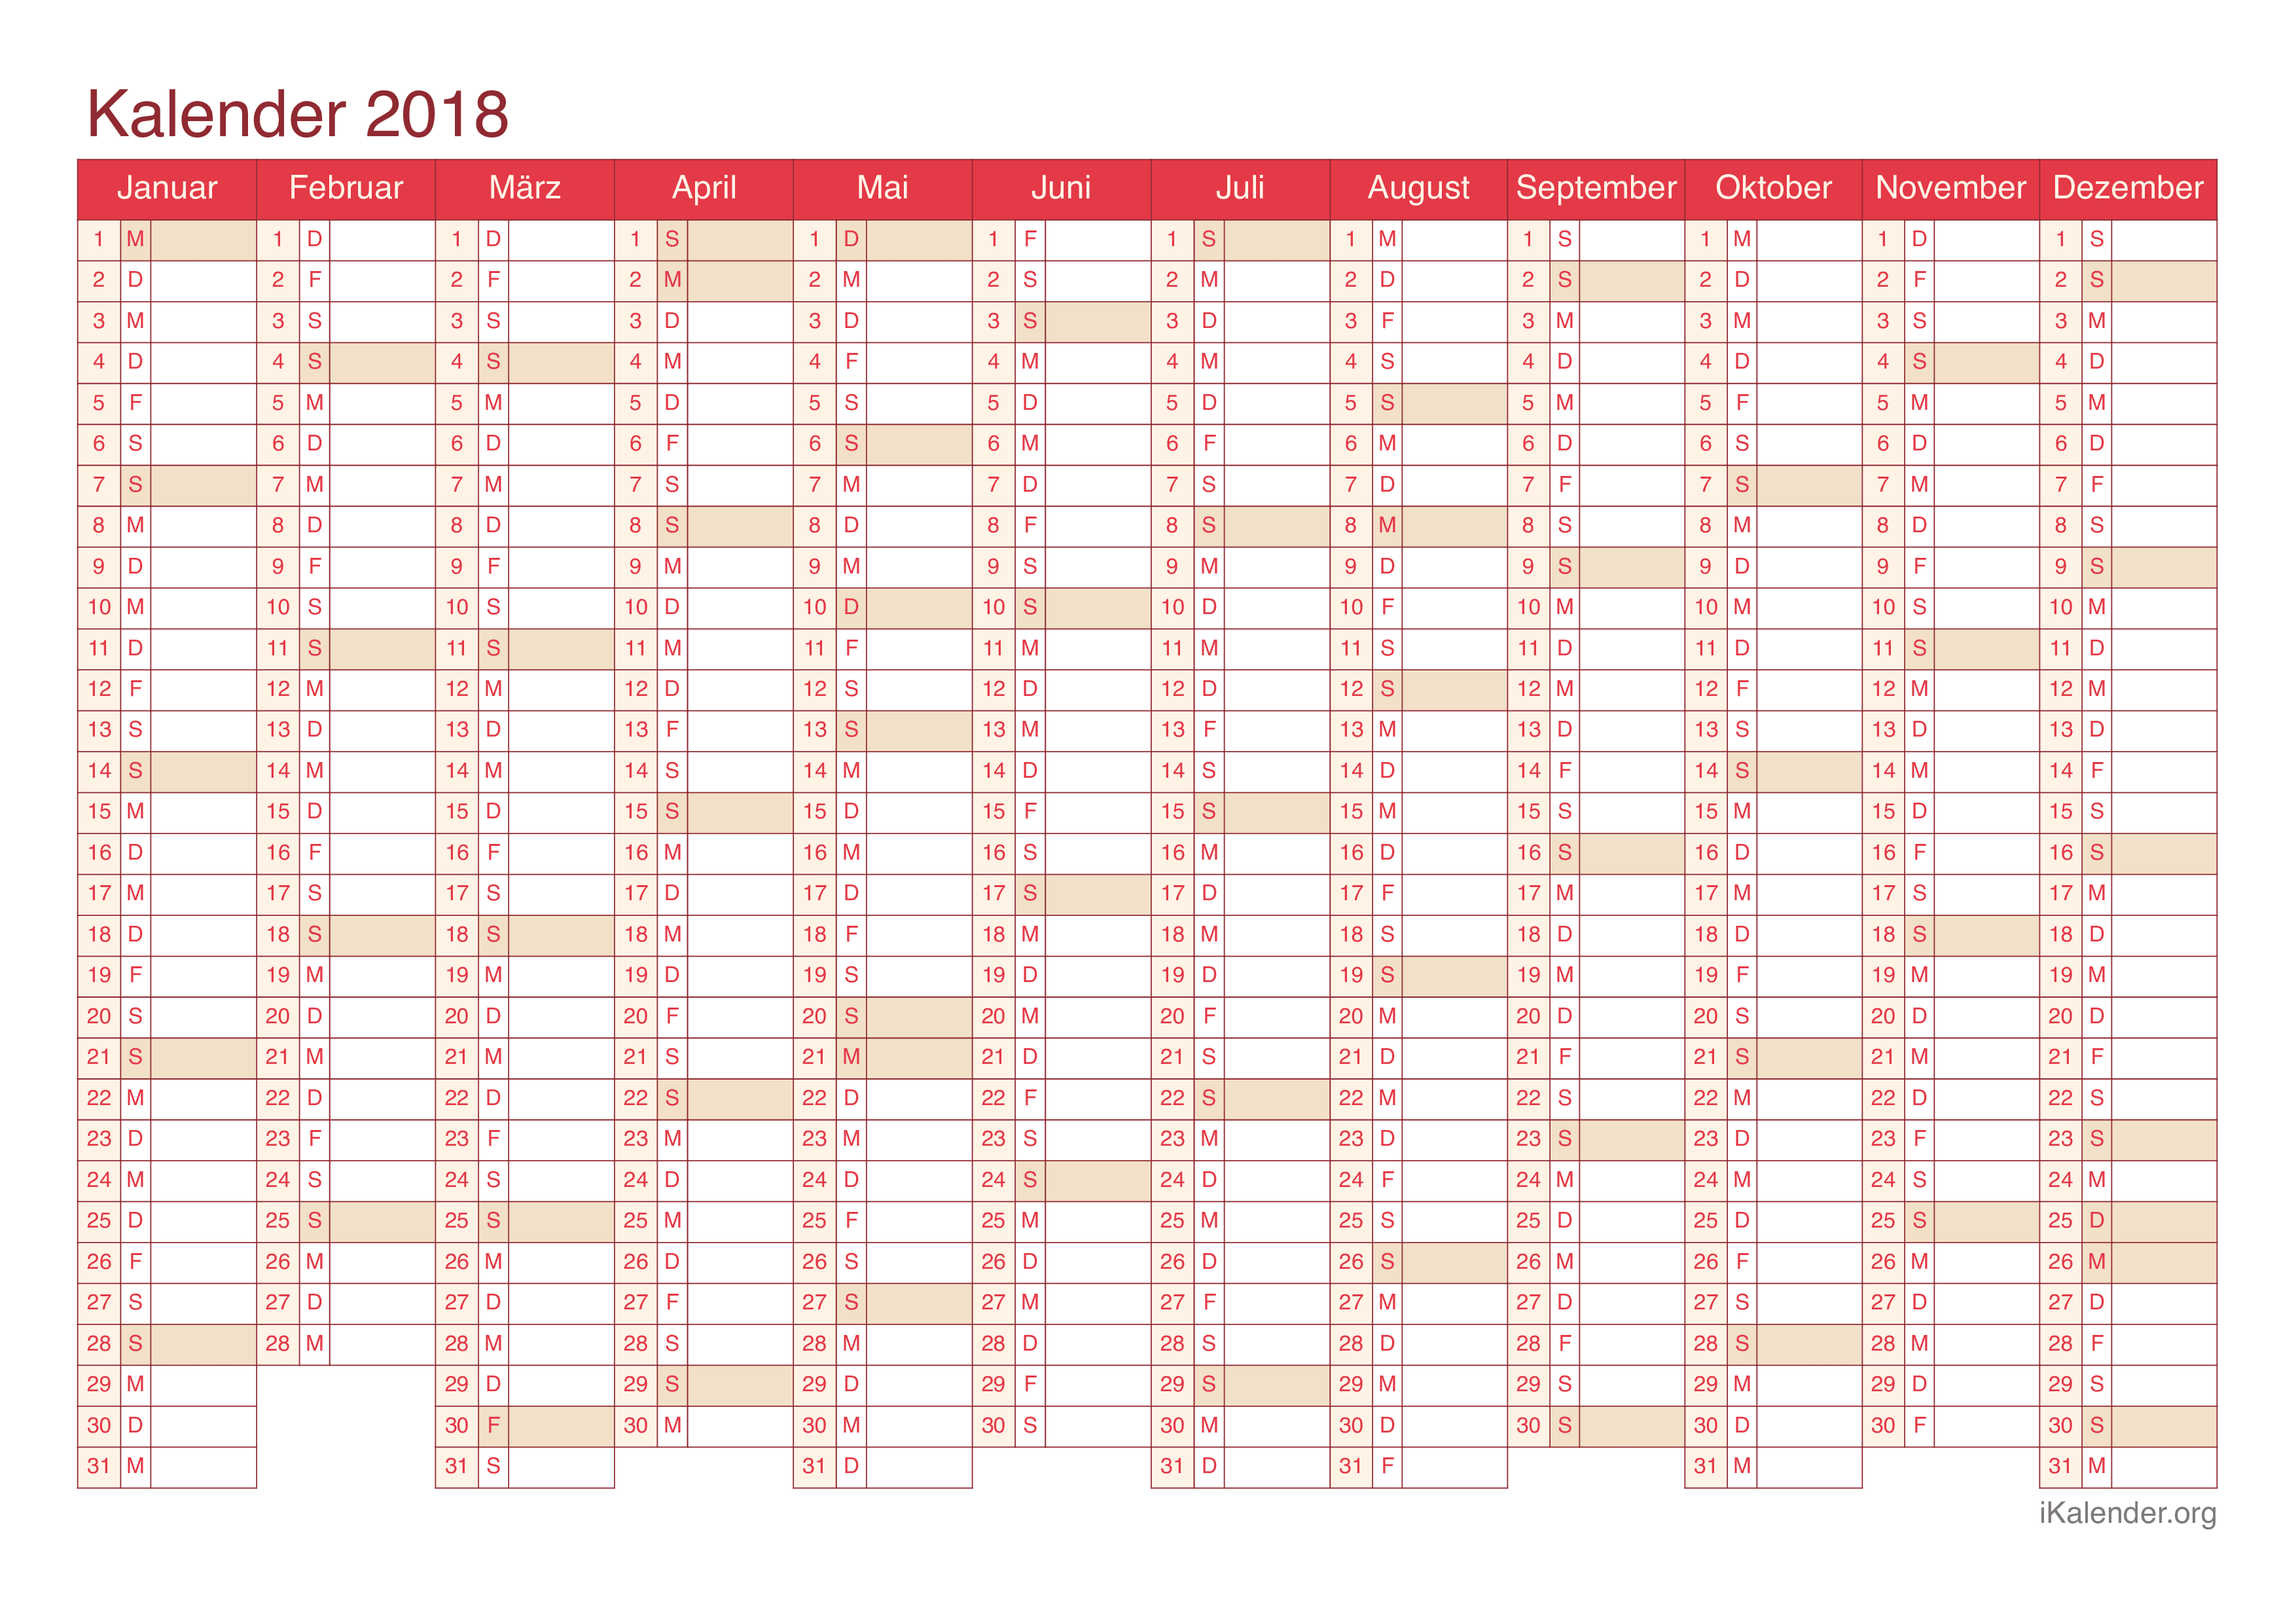 Jahreskalender 2018 - Cherry